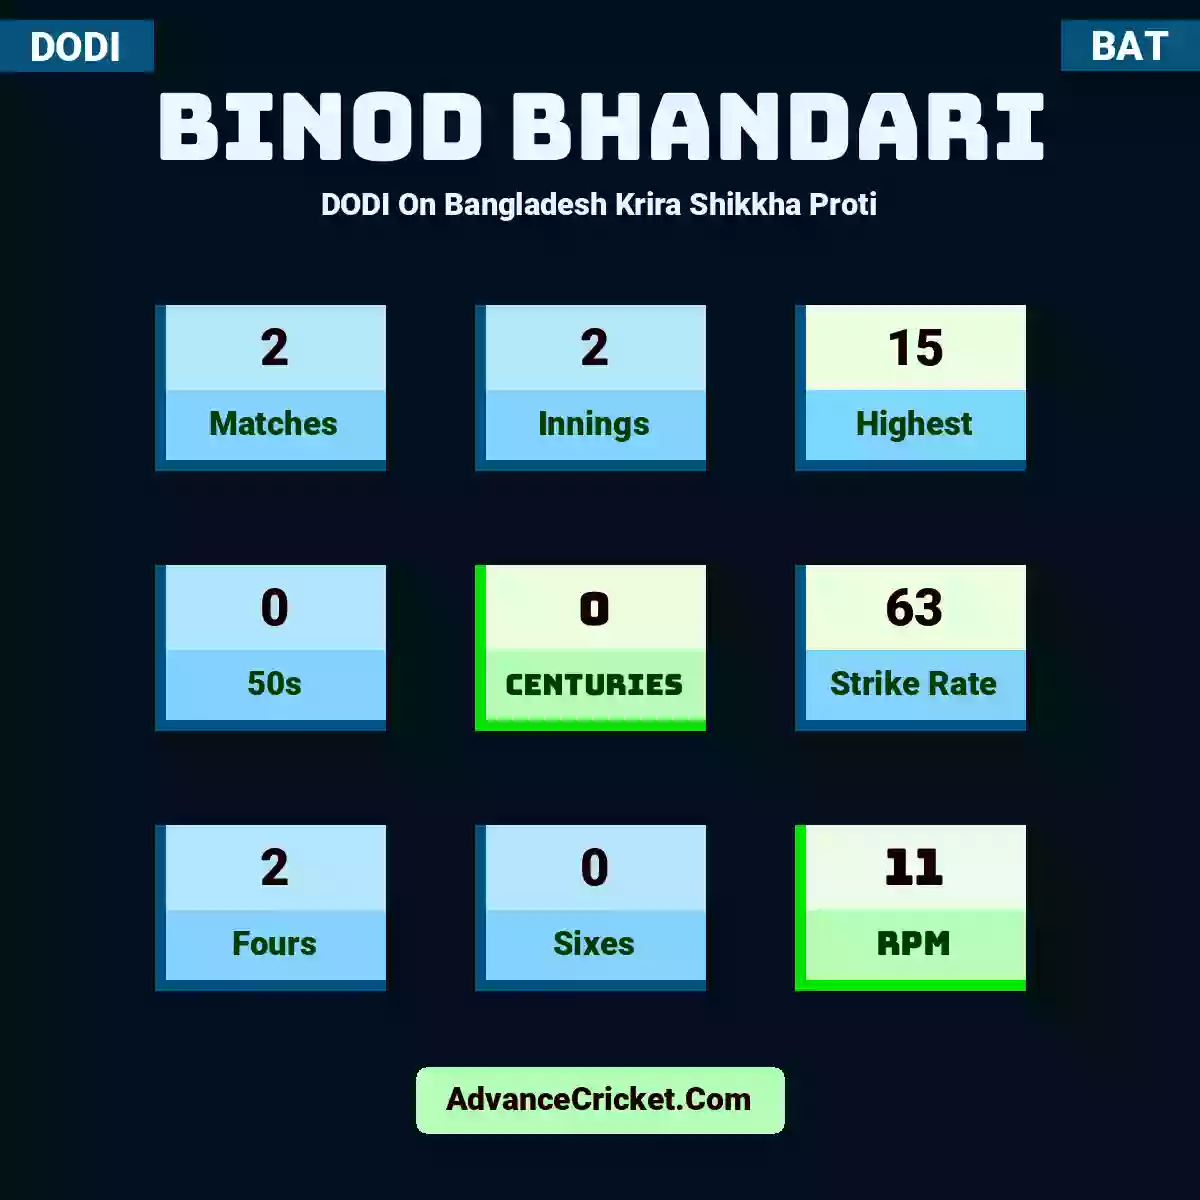 Binod Bhandari DODI  On Bangladesh Krira Shikkha Proti, Binod Bhandari played 1 matches, scored 5 runs as highest, 0 half-centuries, and 0 centuries, with a strike rate of 41. B.Bhandari hit 0 fours and 0 sixes, with an RPM of 5.